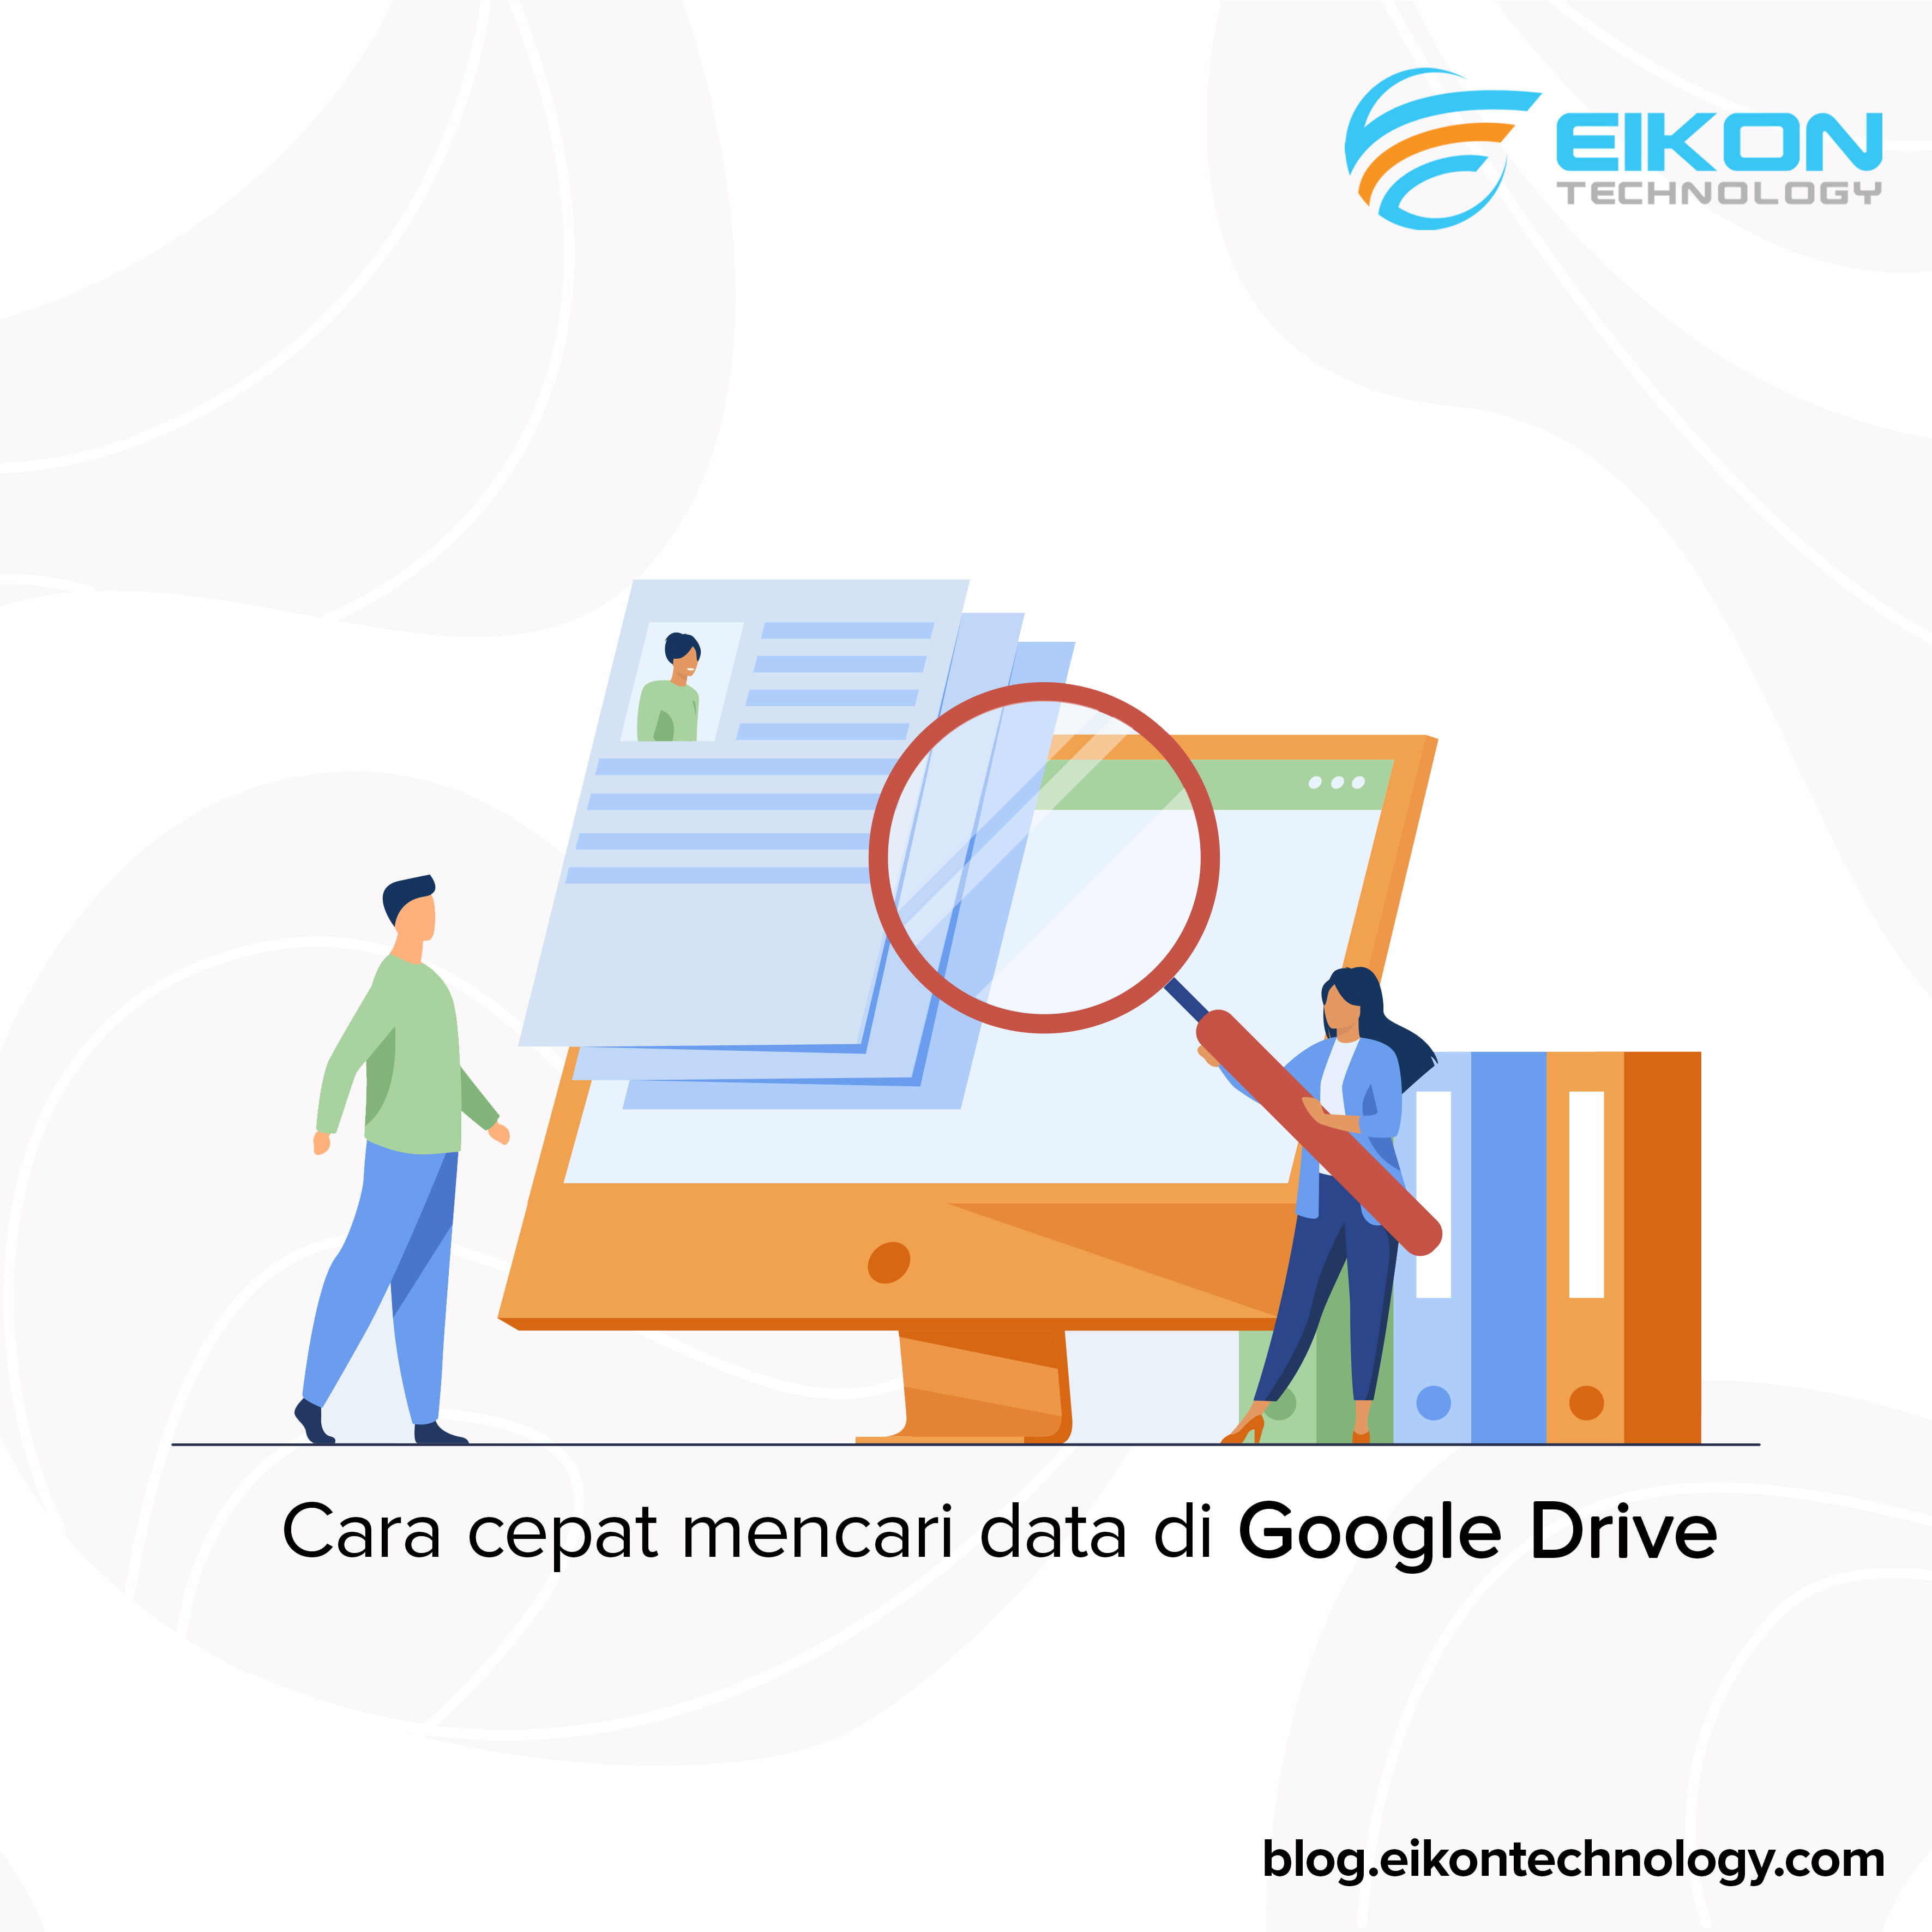 Cara cepat mencari data di Google Drive